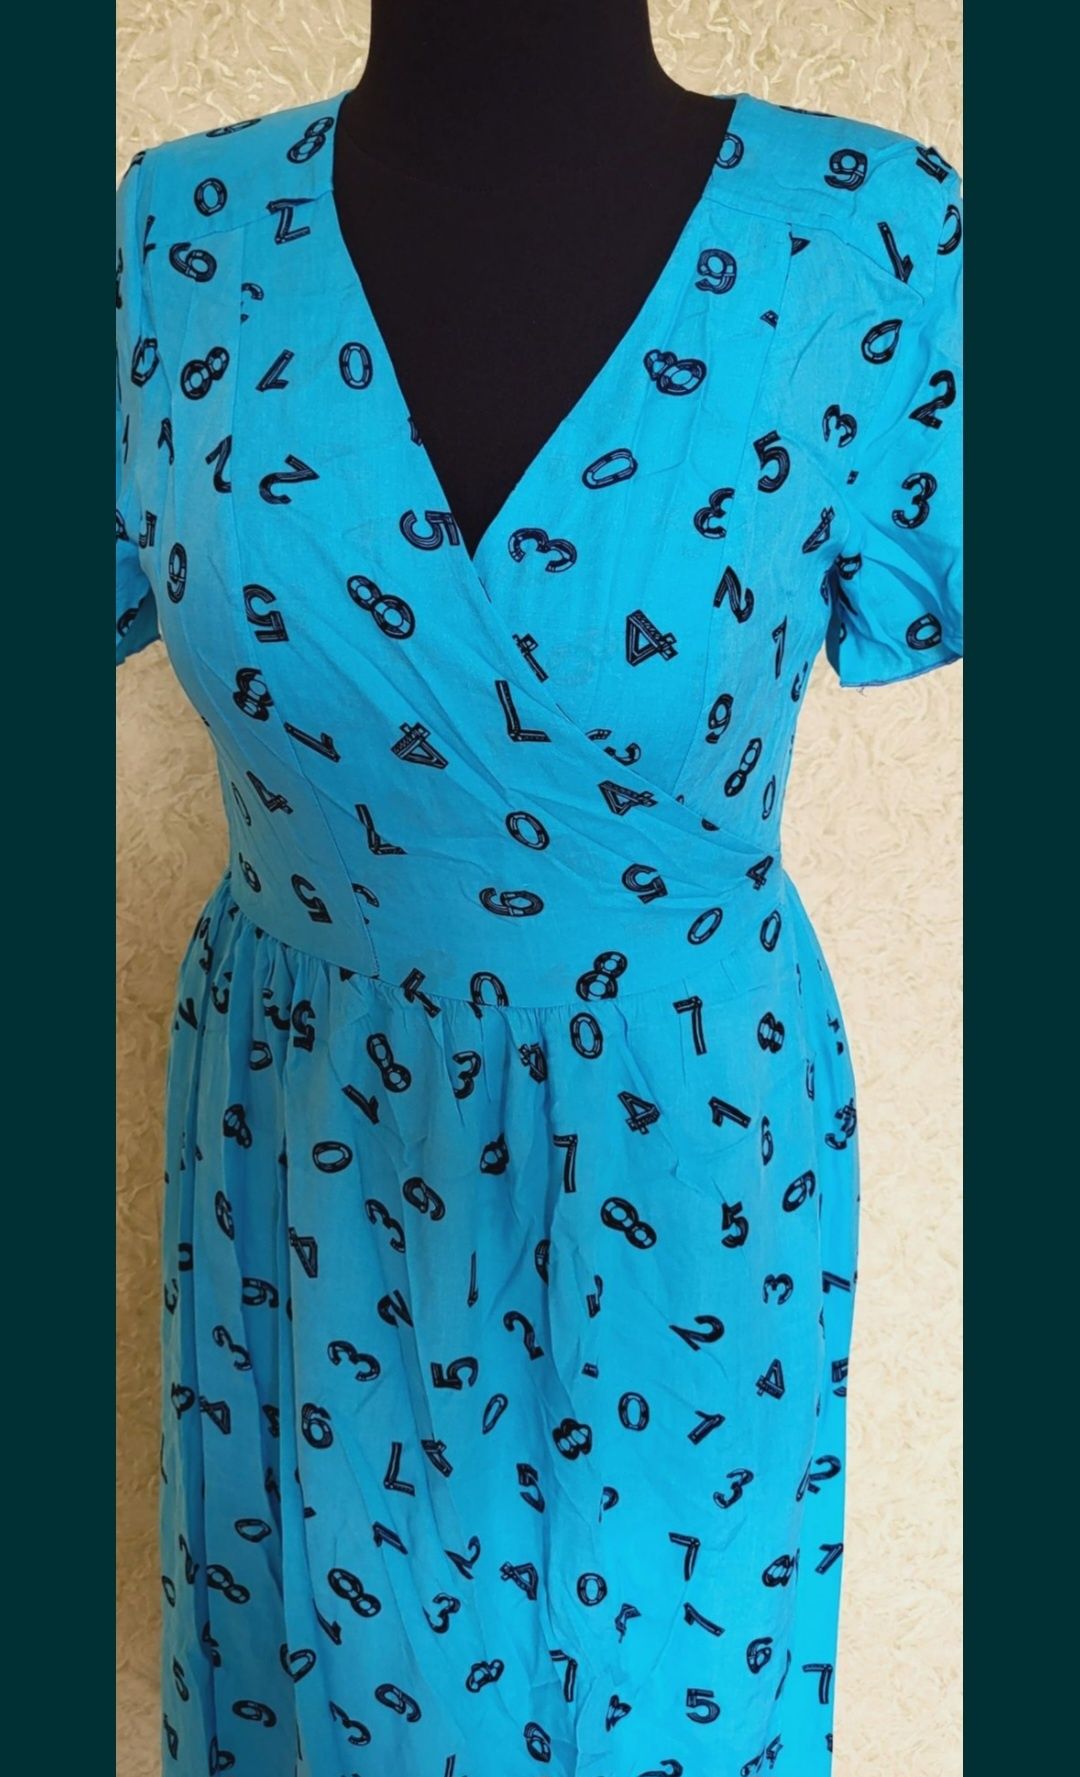 Платье коттон штапель.. назапах 48-50р яркое голубое